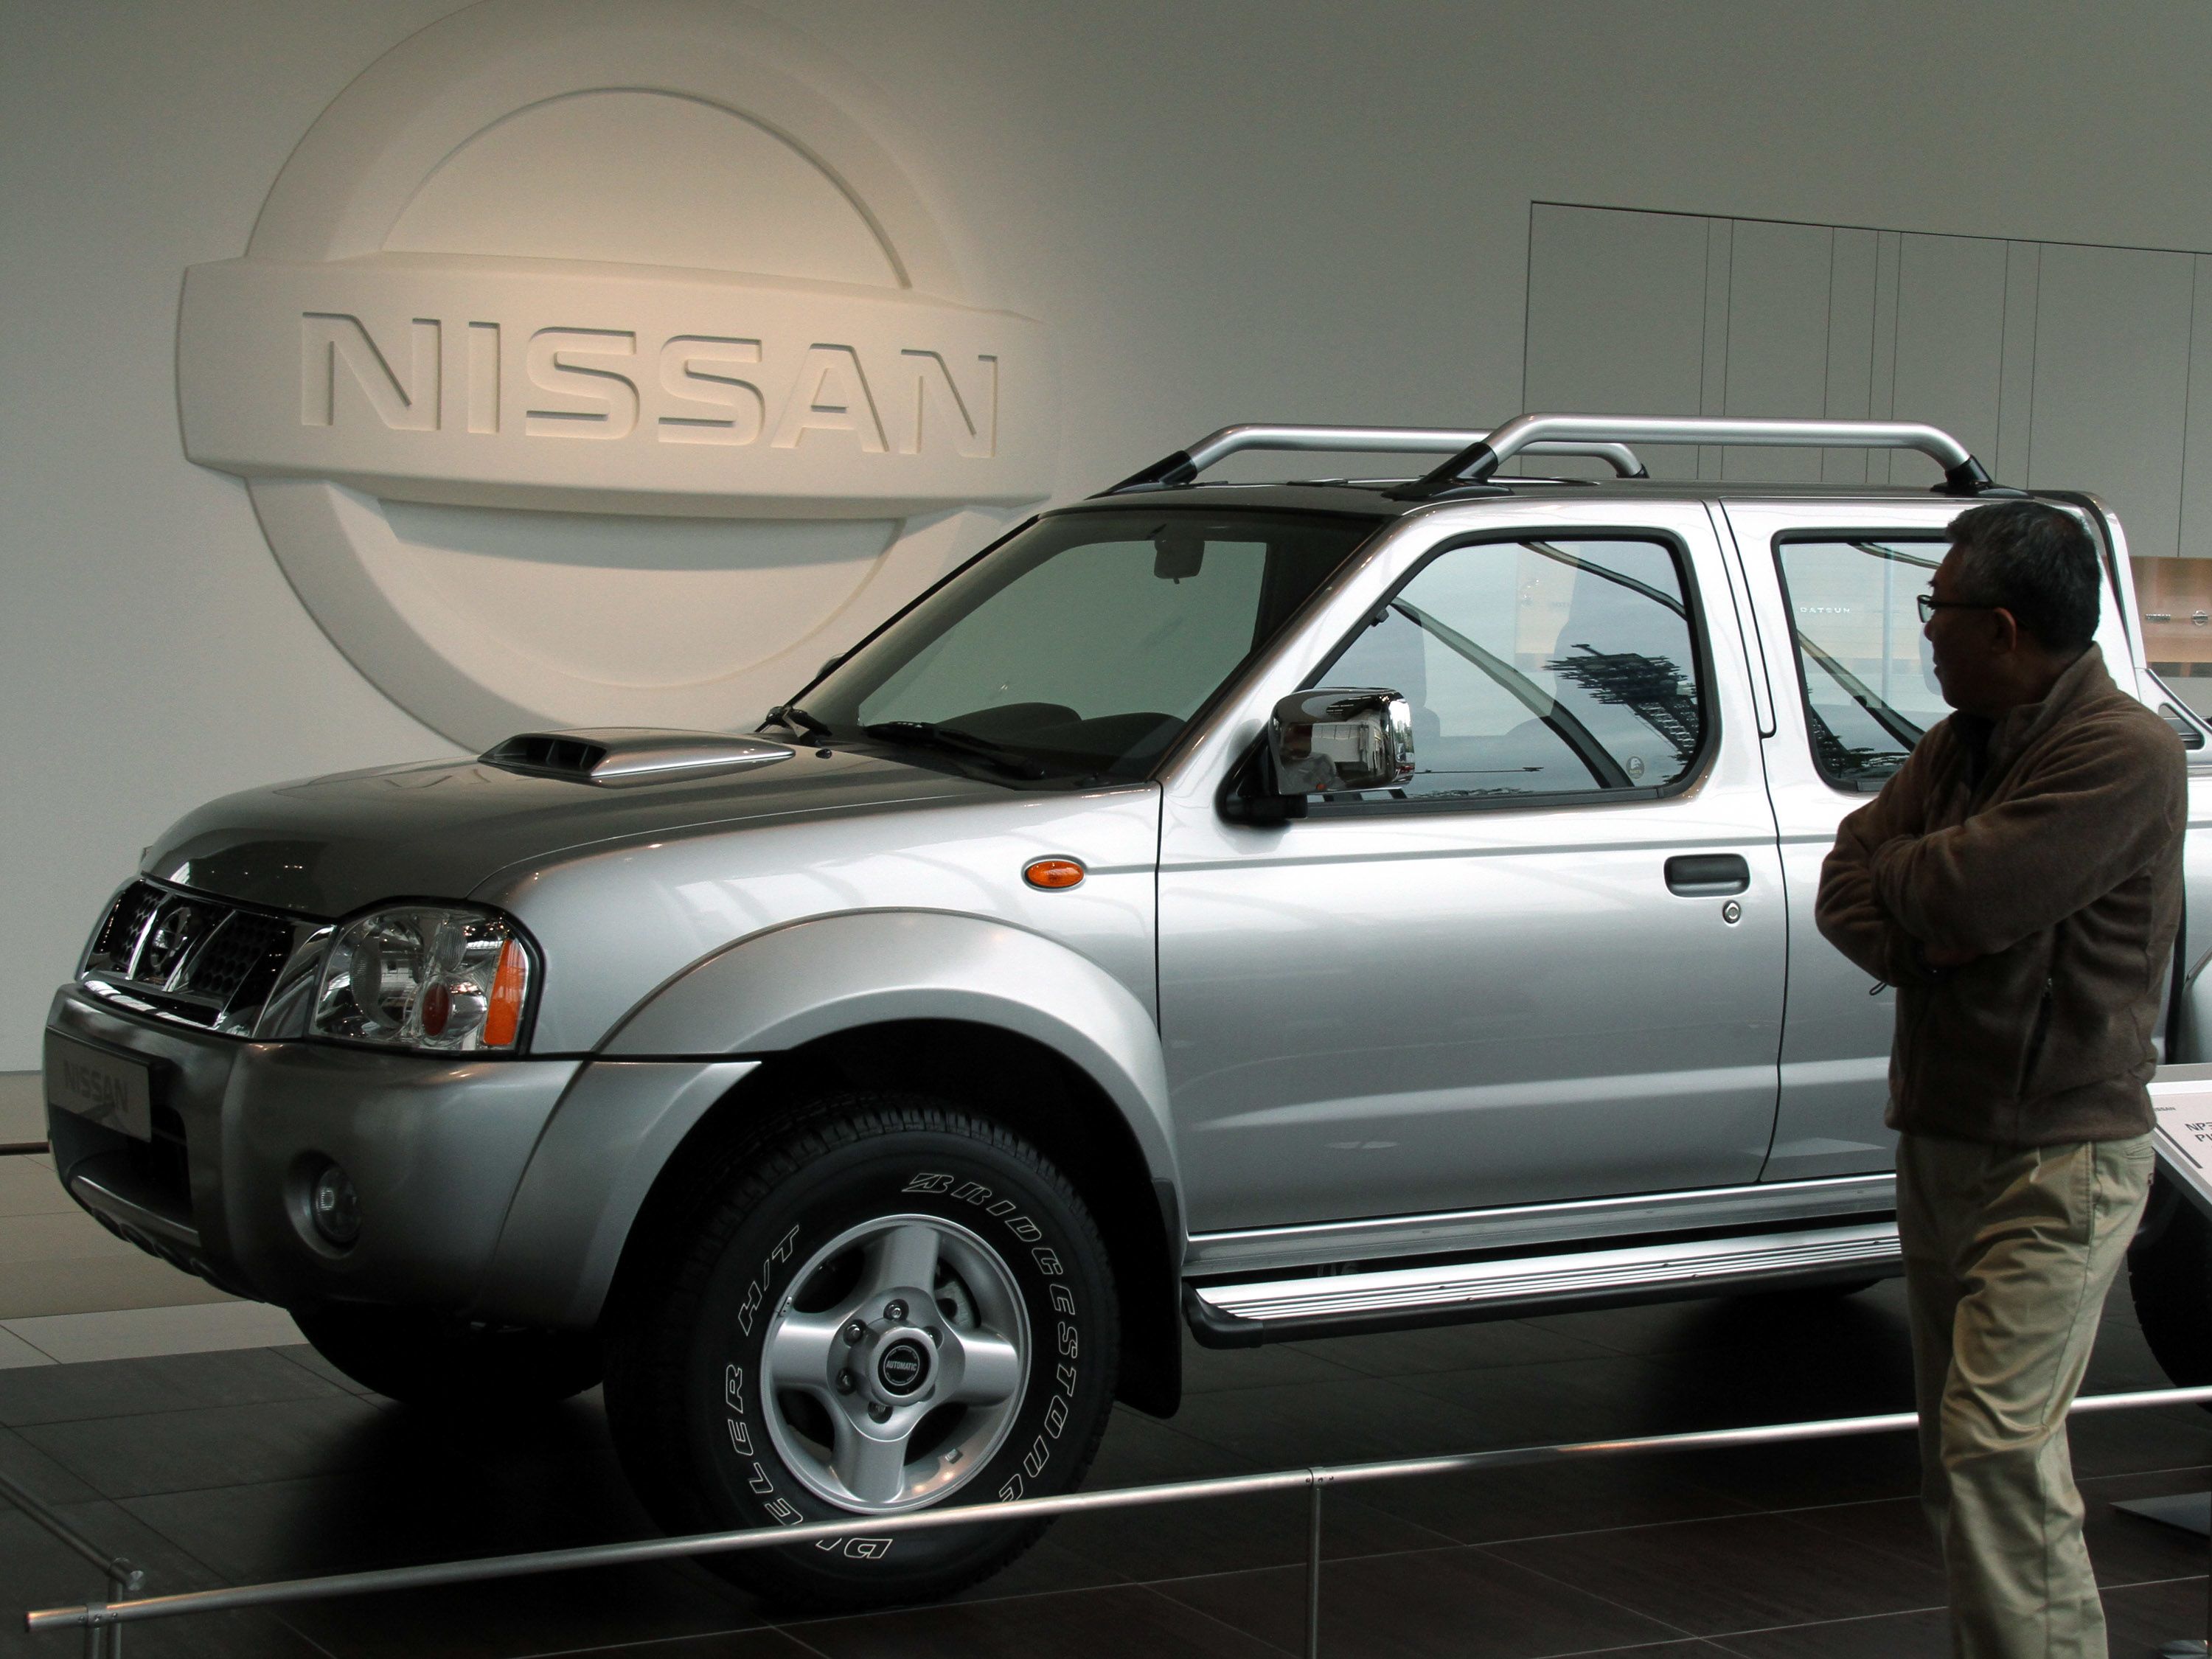 La camioneta Nissan NP-300 es de las más robadas en México (Foto: Haruyoshi Yamaguchi/Bloomberg)